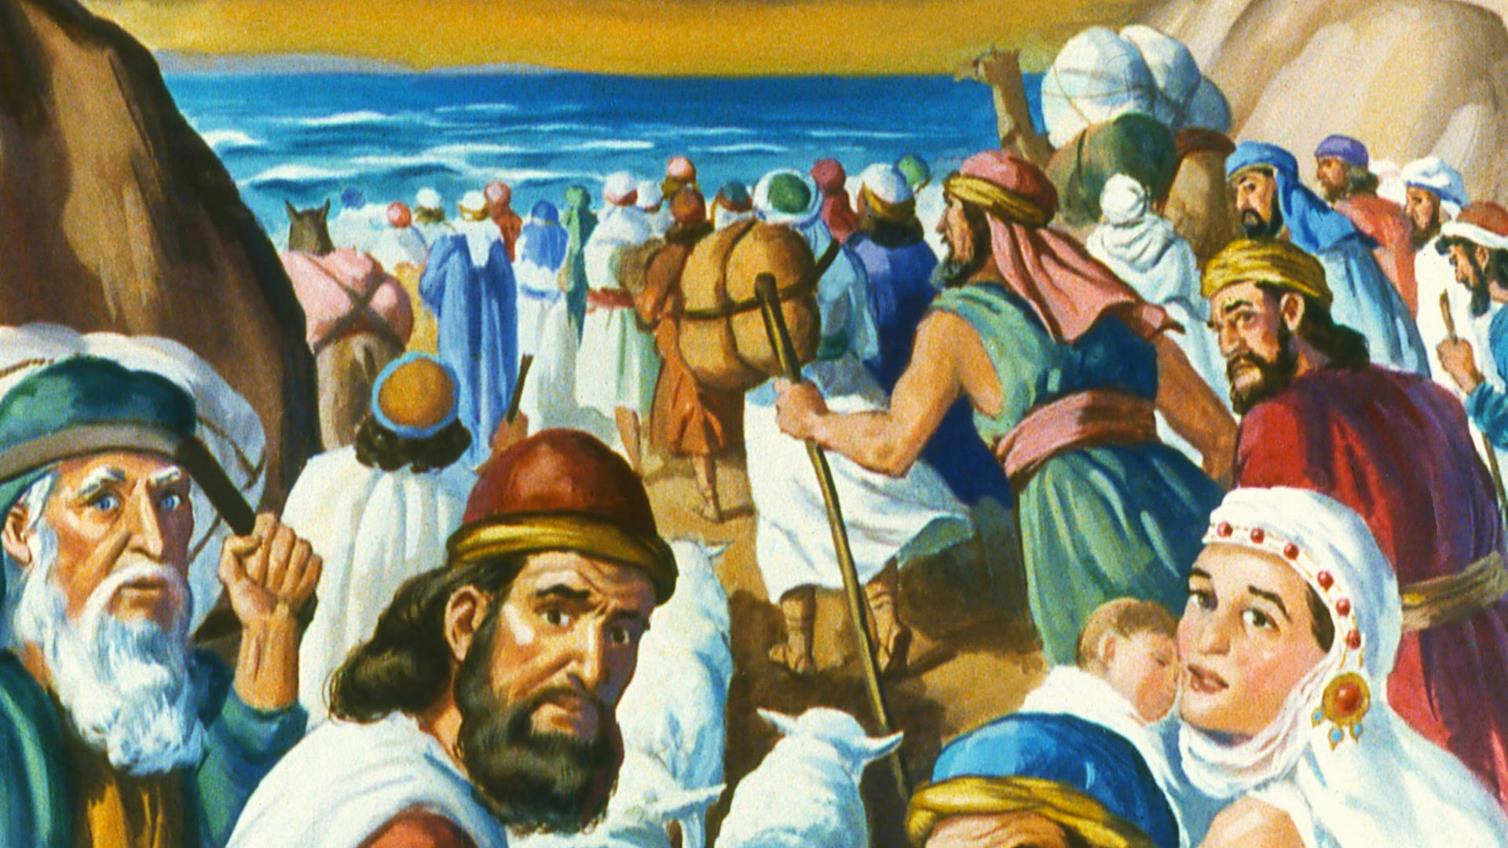 走与上帝有背景海景和赤足走在基督教的沙滩设计的夫人 库存图片. 图片 包括有 看板卡, 背包, 图象, 基督教 - 136851075